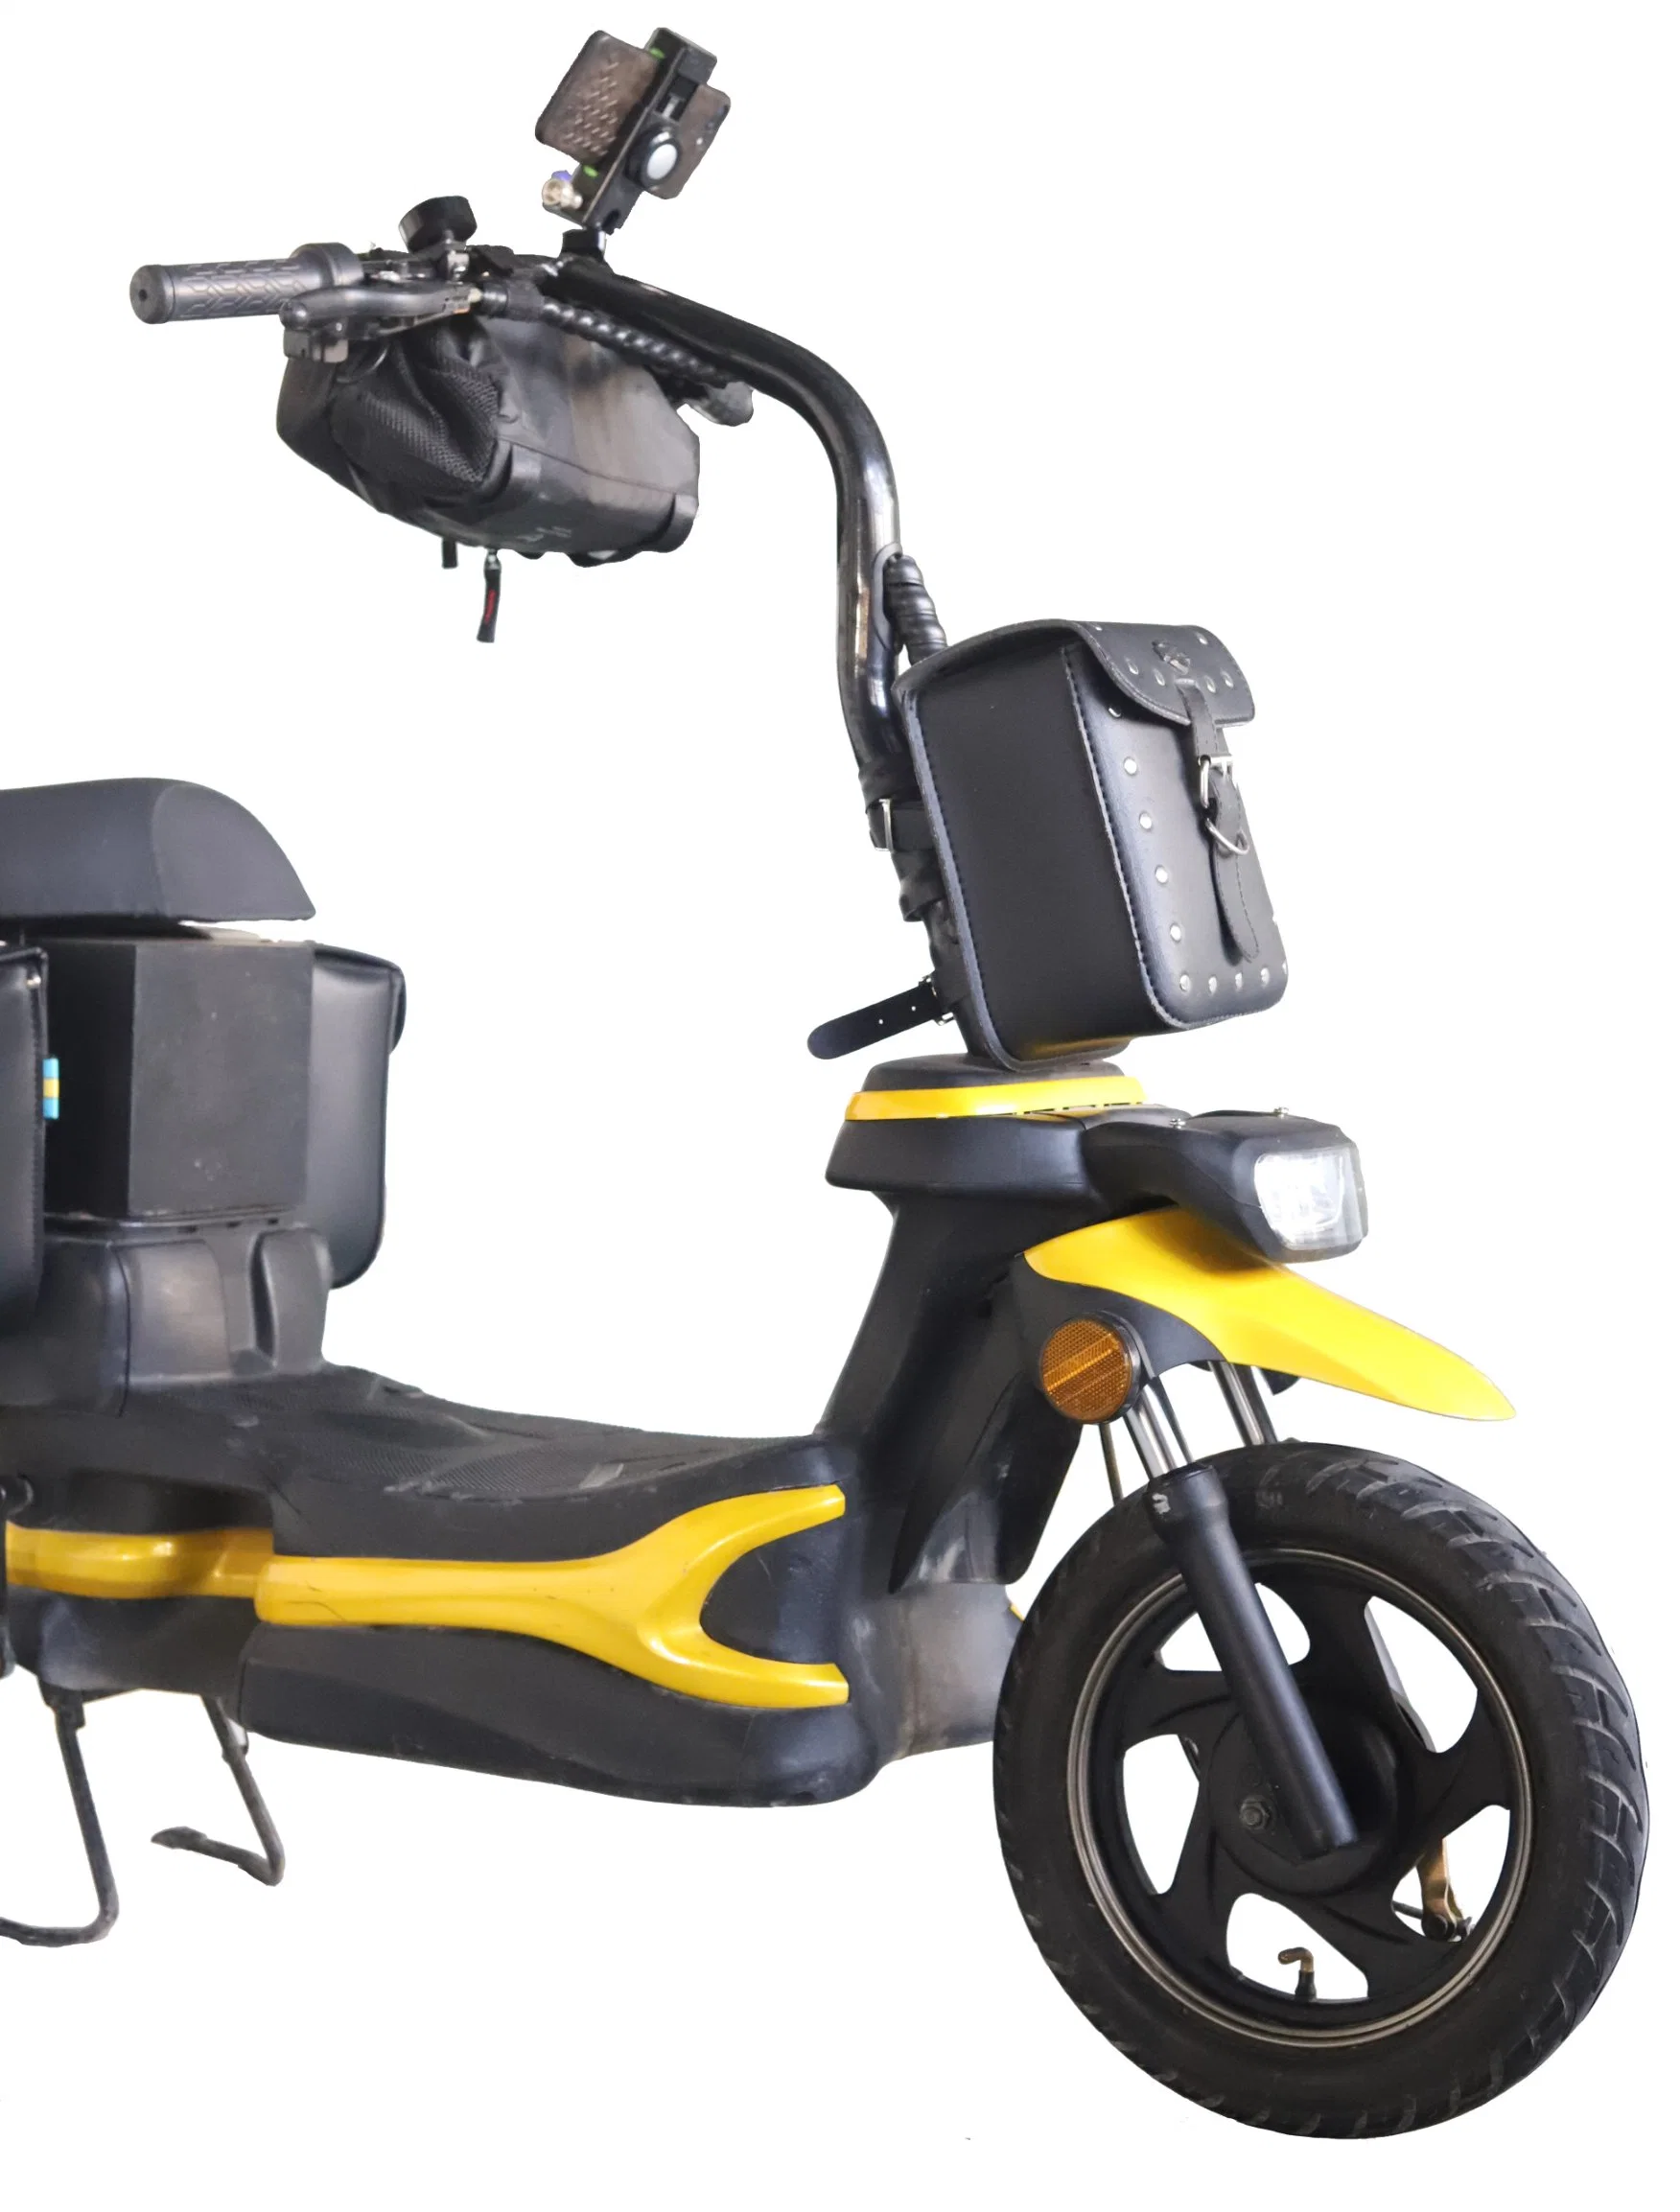 E-bike, Elevadores eléctricos de aluguer, Elevadores eléctricos de aluguer de scooter eléctrico com Pedal